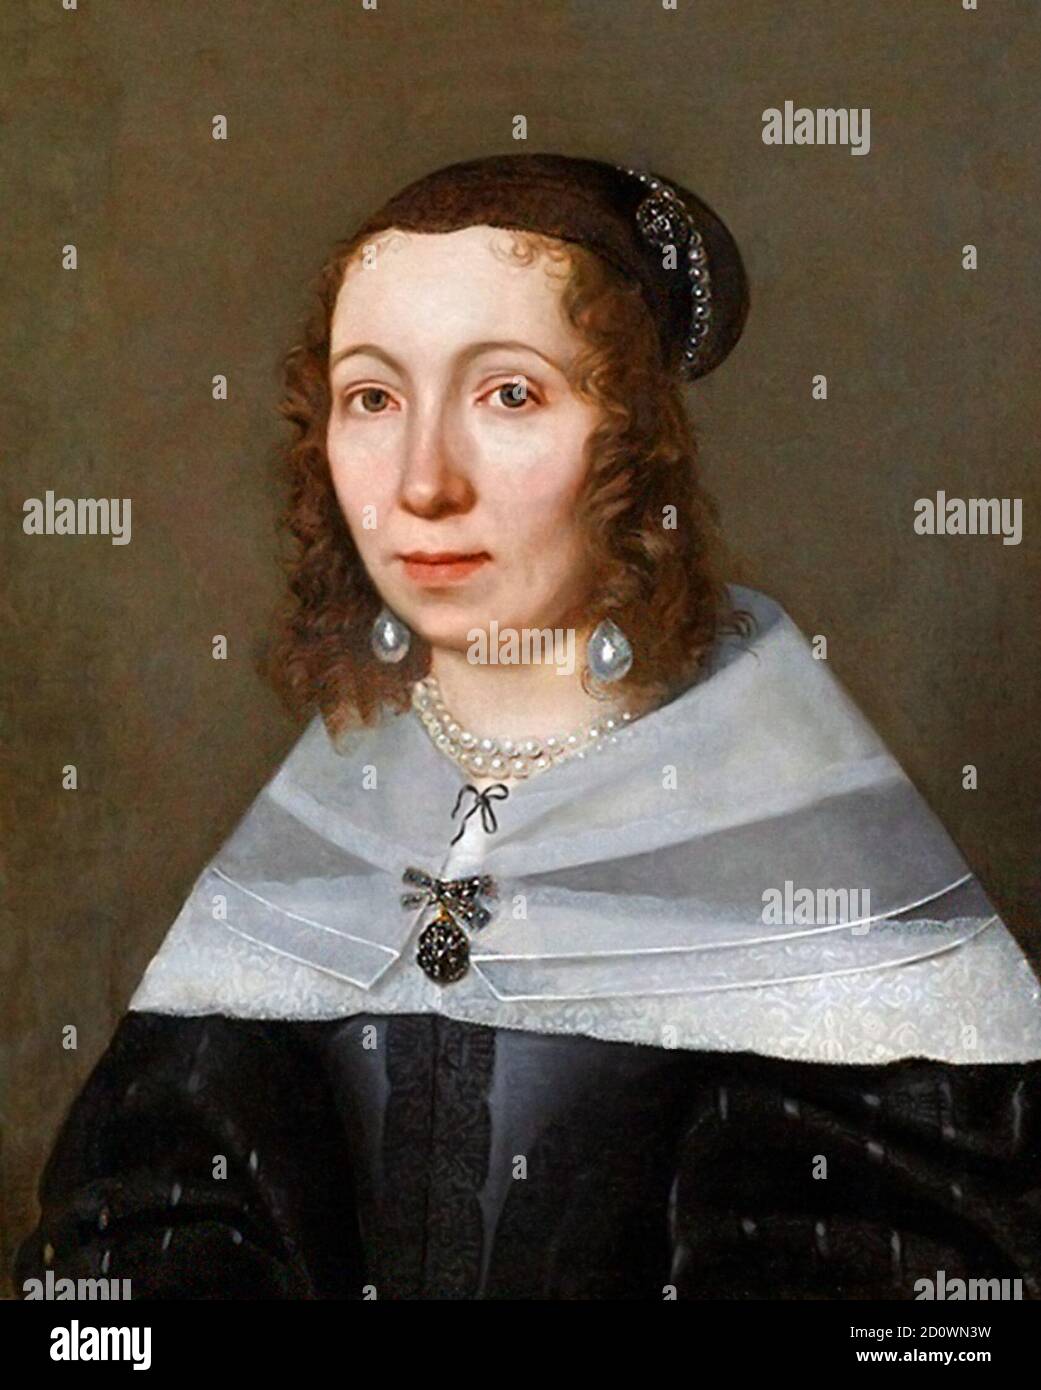 Maria Sibylla Merian (1647-1717) by Jacob Marrel, 1679 Stock Photo